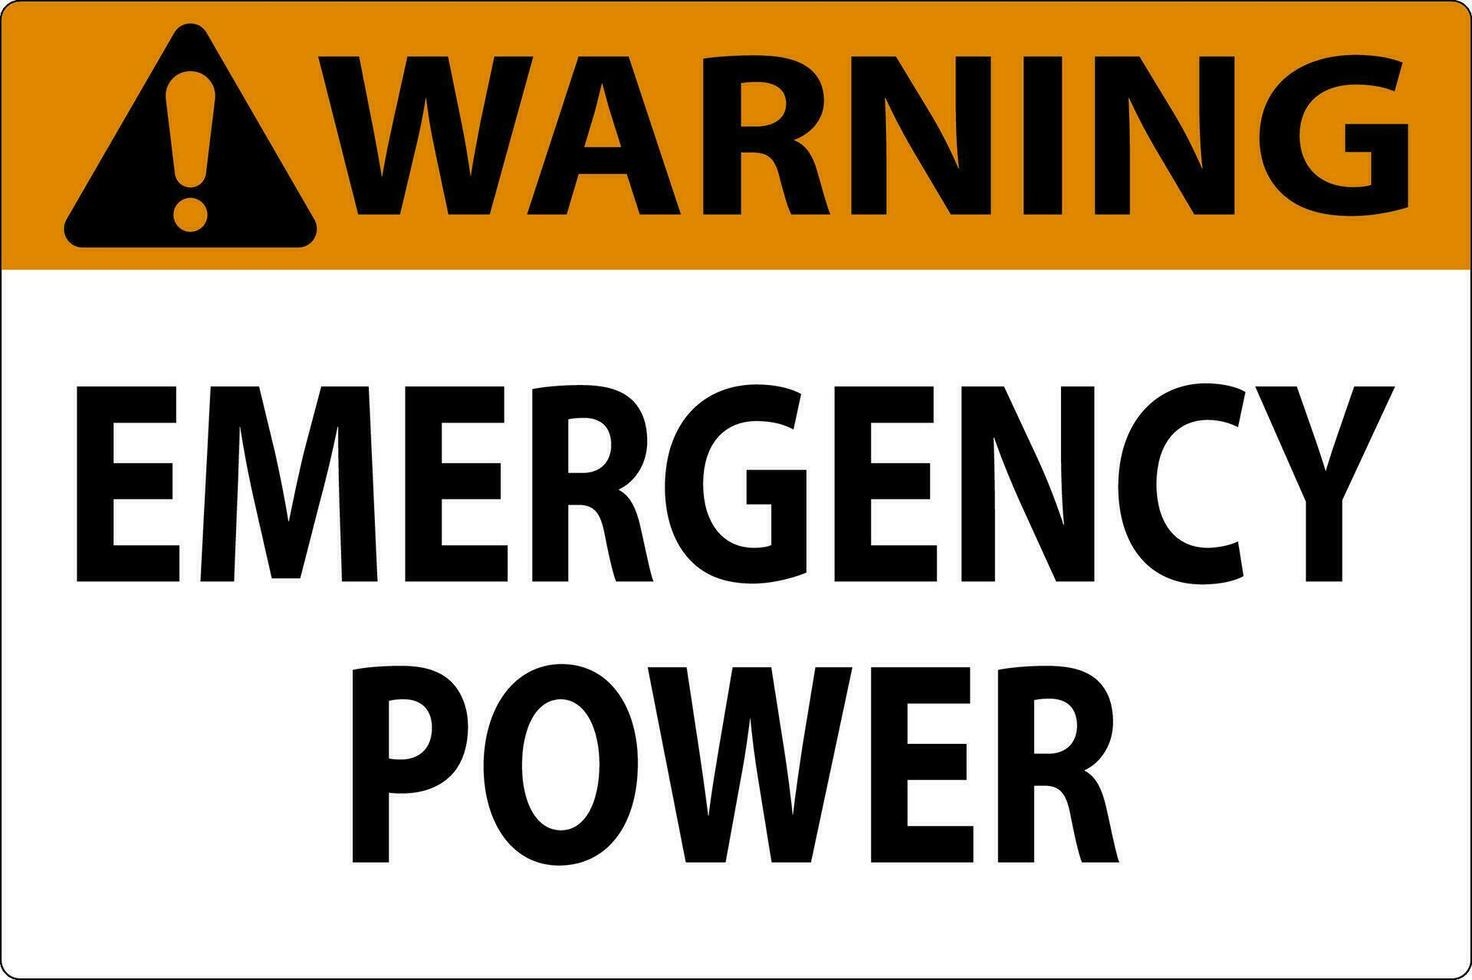 advertencia firmar emergencia poder vector